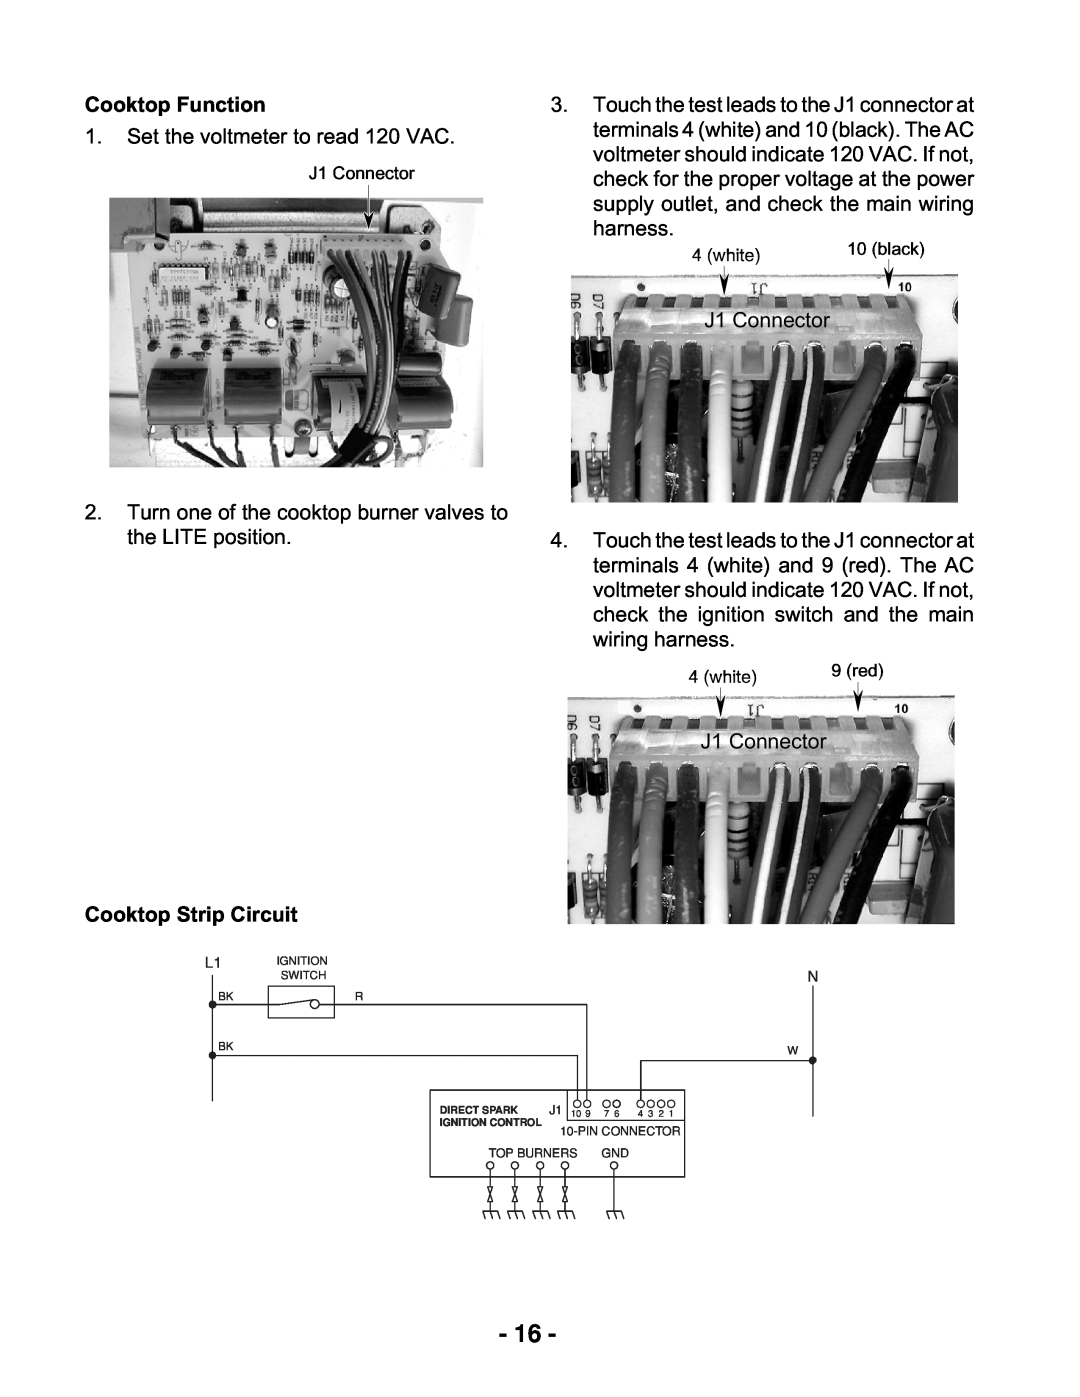 Whirlpool KR-28 manual Cooktop Function, Cooktop Strip Circuit, J1, 7 6 4 